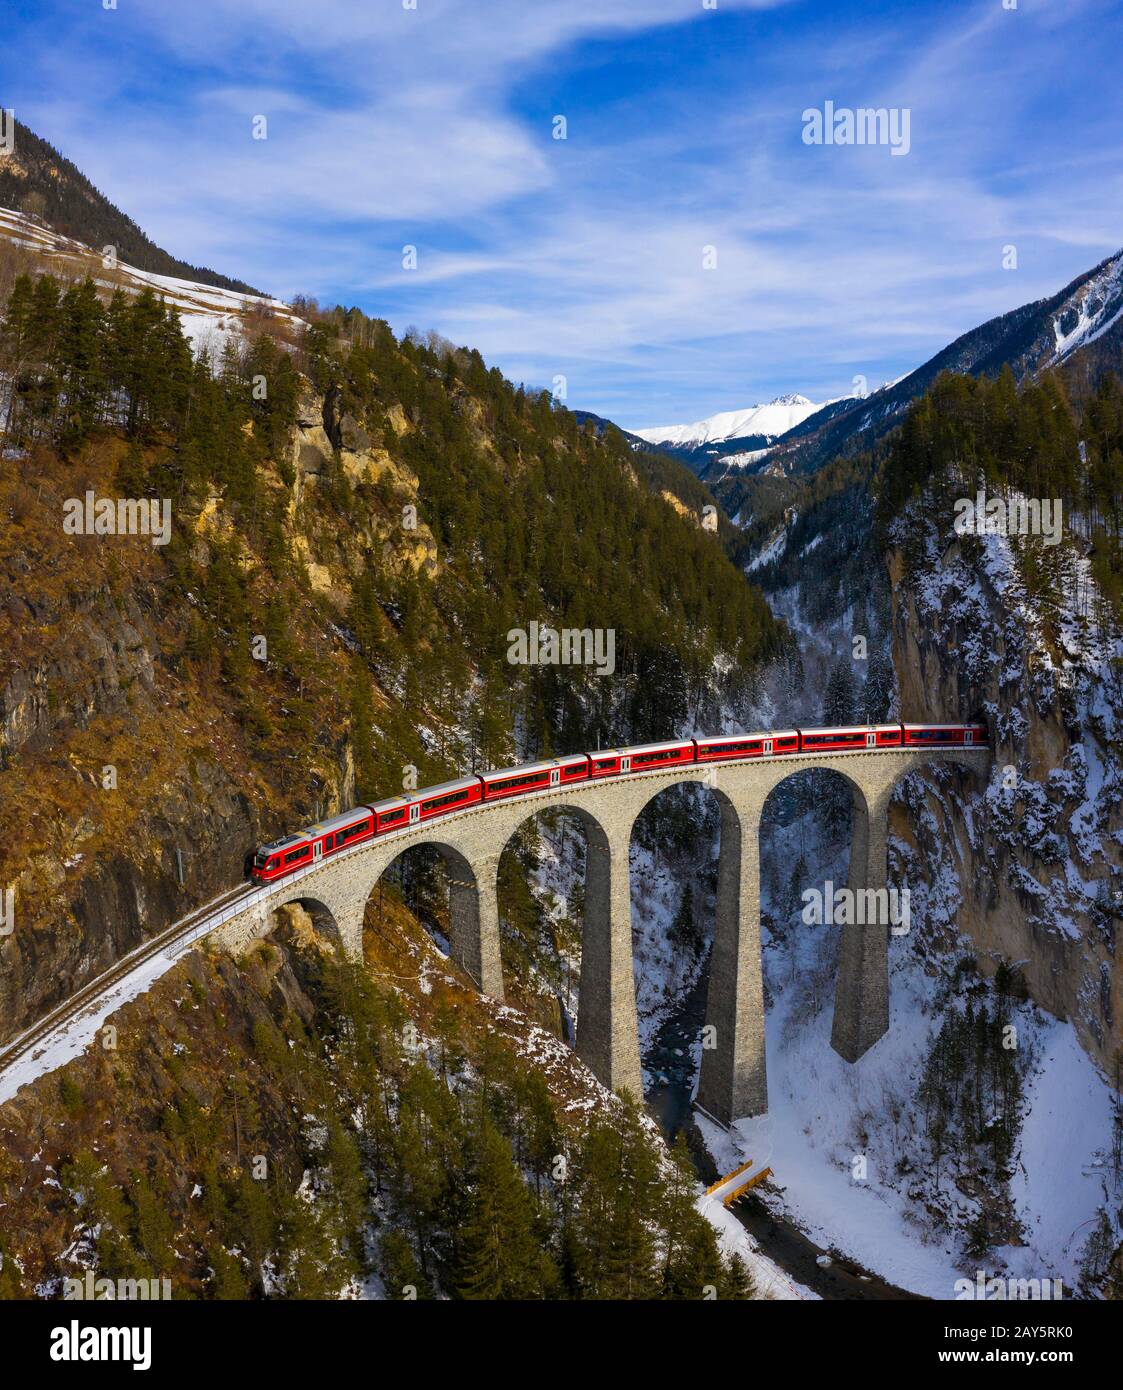 Treno rosso sul Landwasser Viadukt in inverno. Filisur, Canton Grigioni, Svizzera, Europa Meridionale Foto Stock